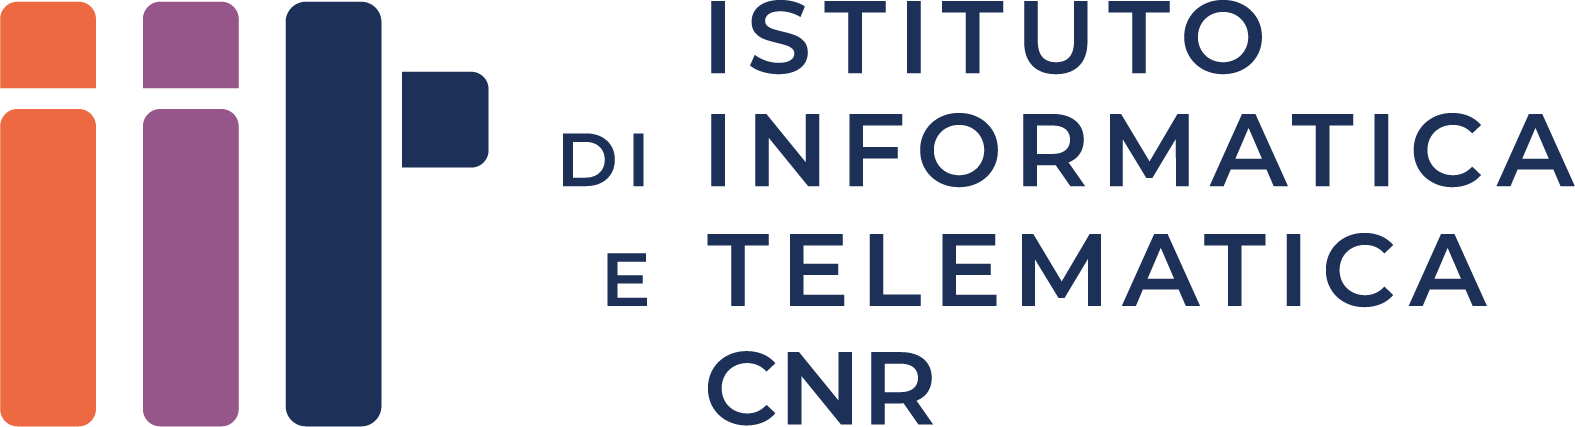 IIT (Istituto di Informatica e Telematica del CNR)